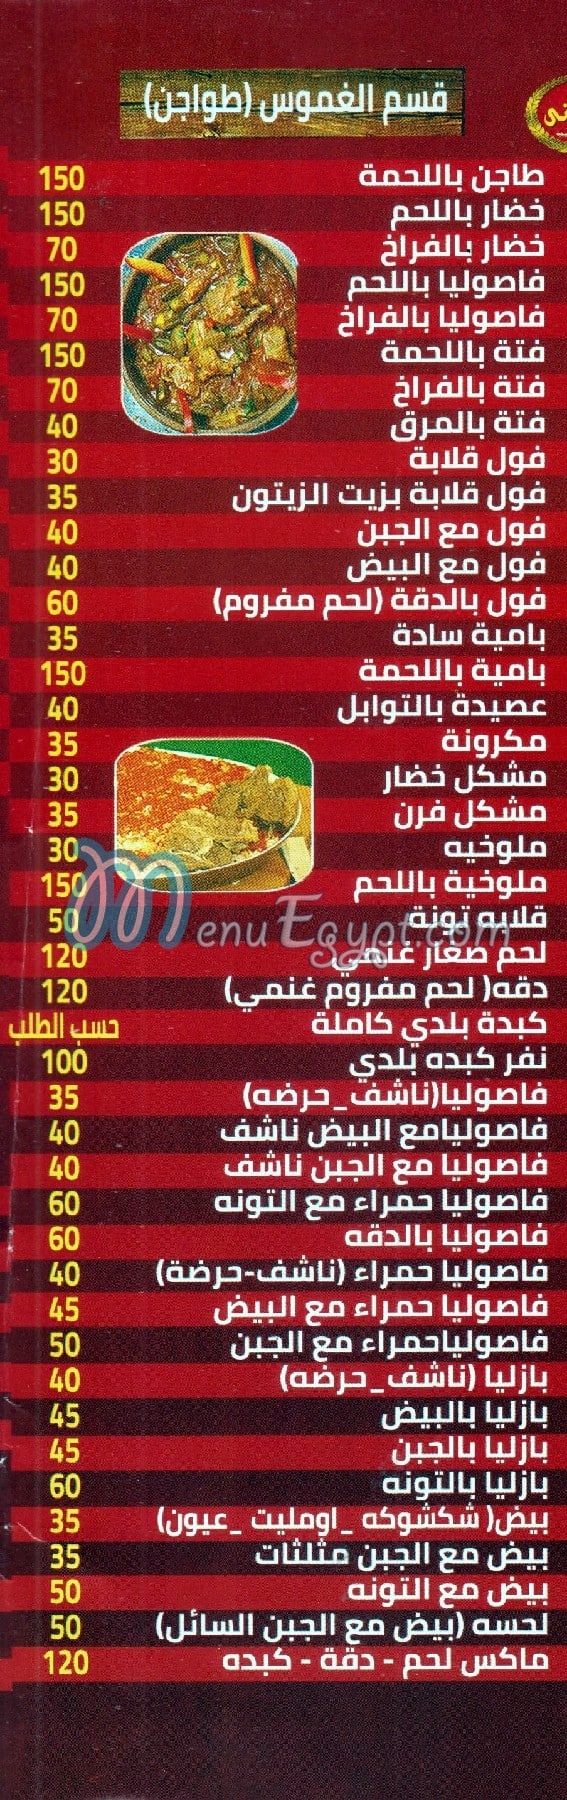 El Zieny El Shipany delivery menu